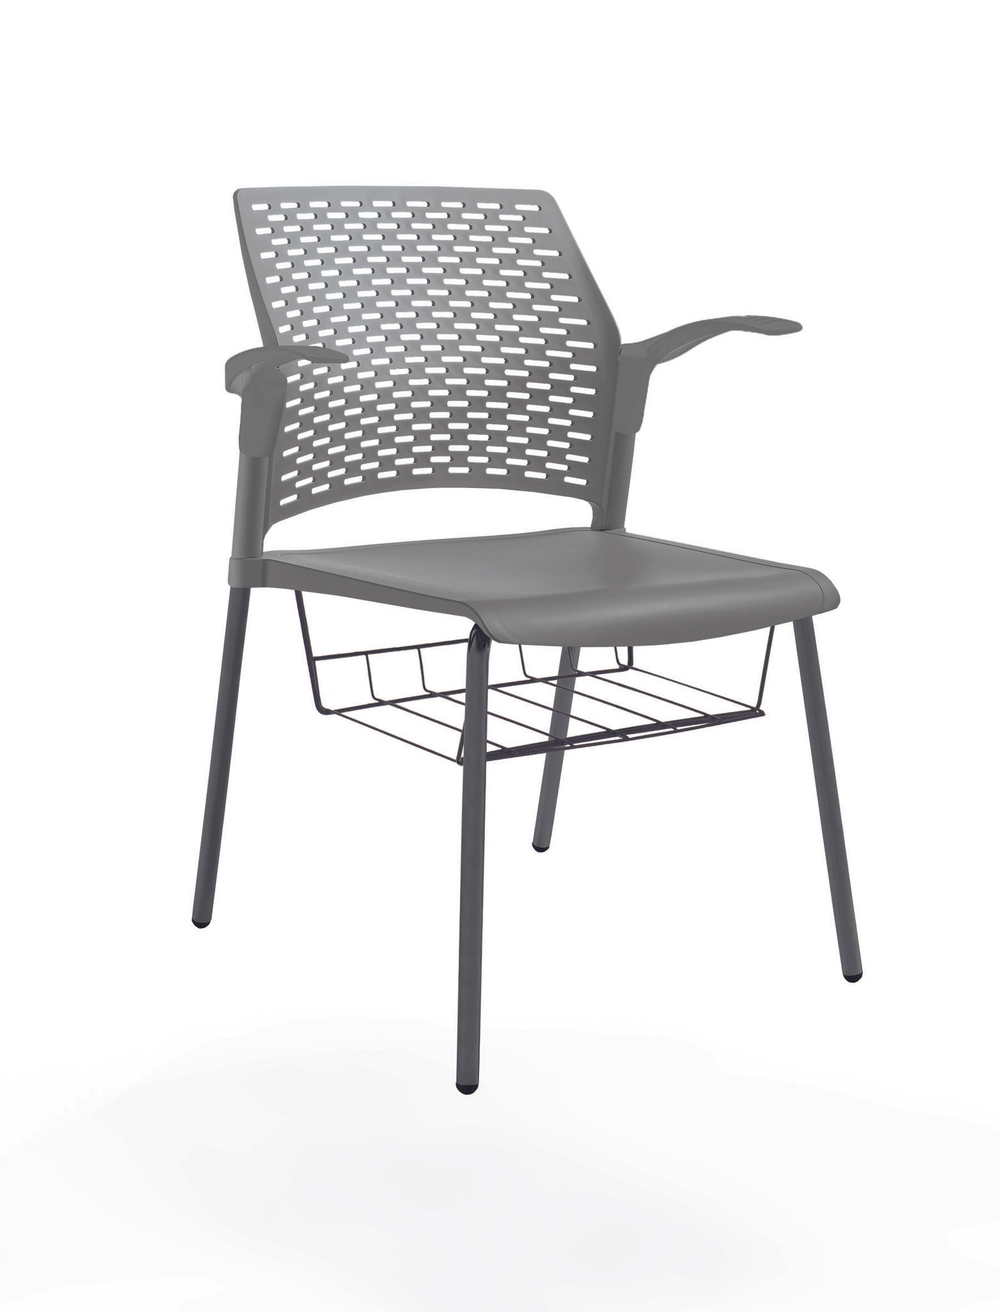 стул Rewind, каркас черный, пластик серый, с открытыми подлокотниками, с подседельной корзиной